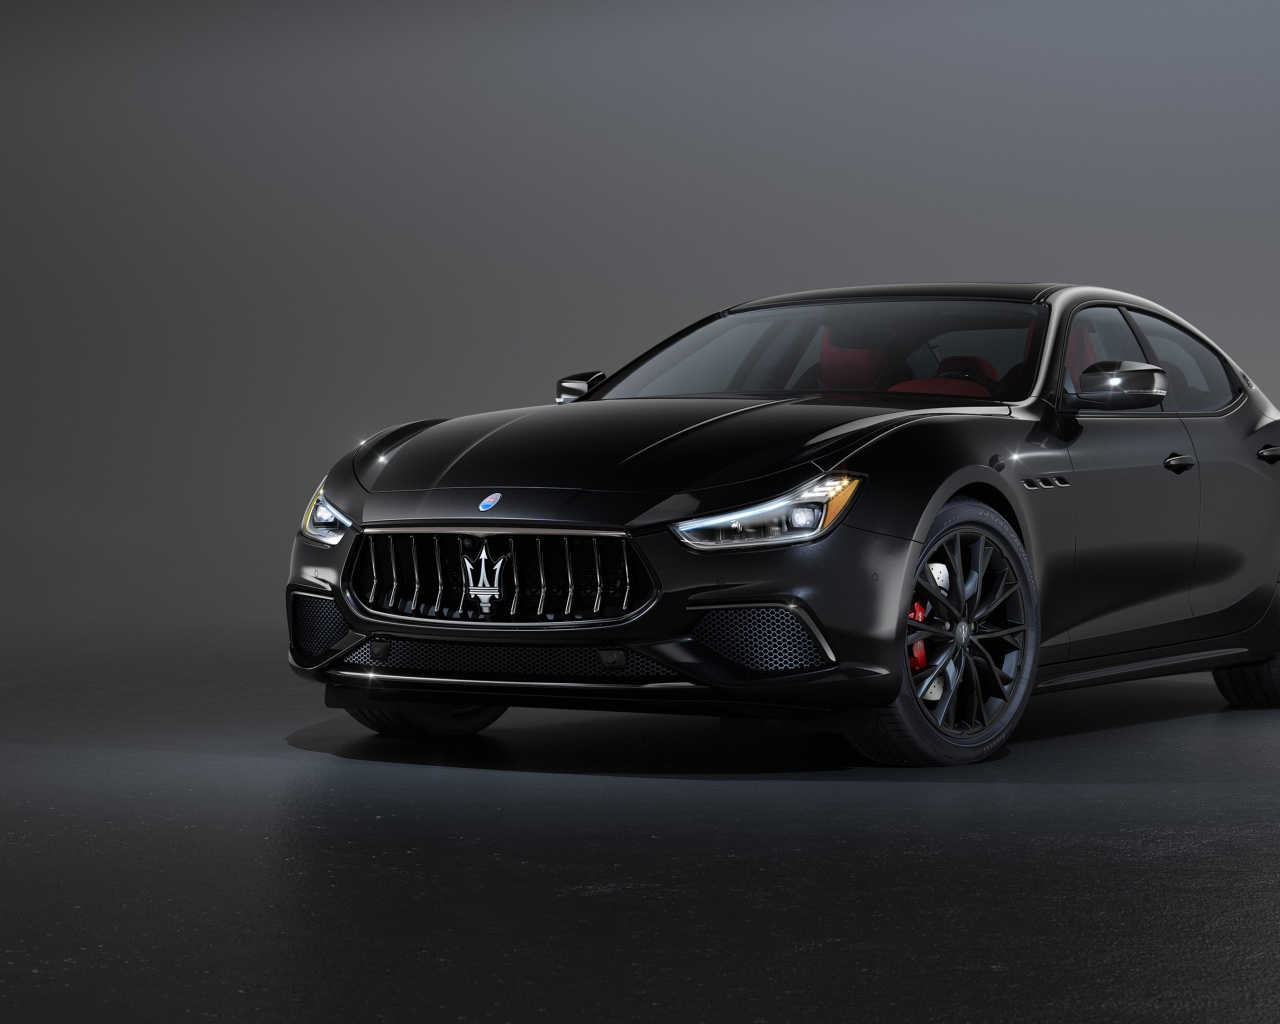 Черный автомобиль Maserati Ghibli S Q4, 2020 года на сером фоне